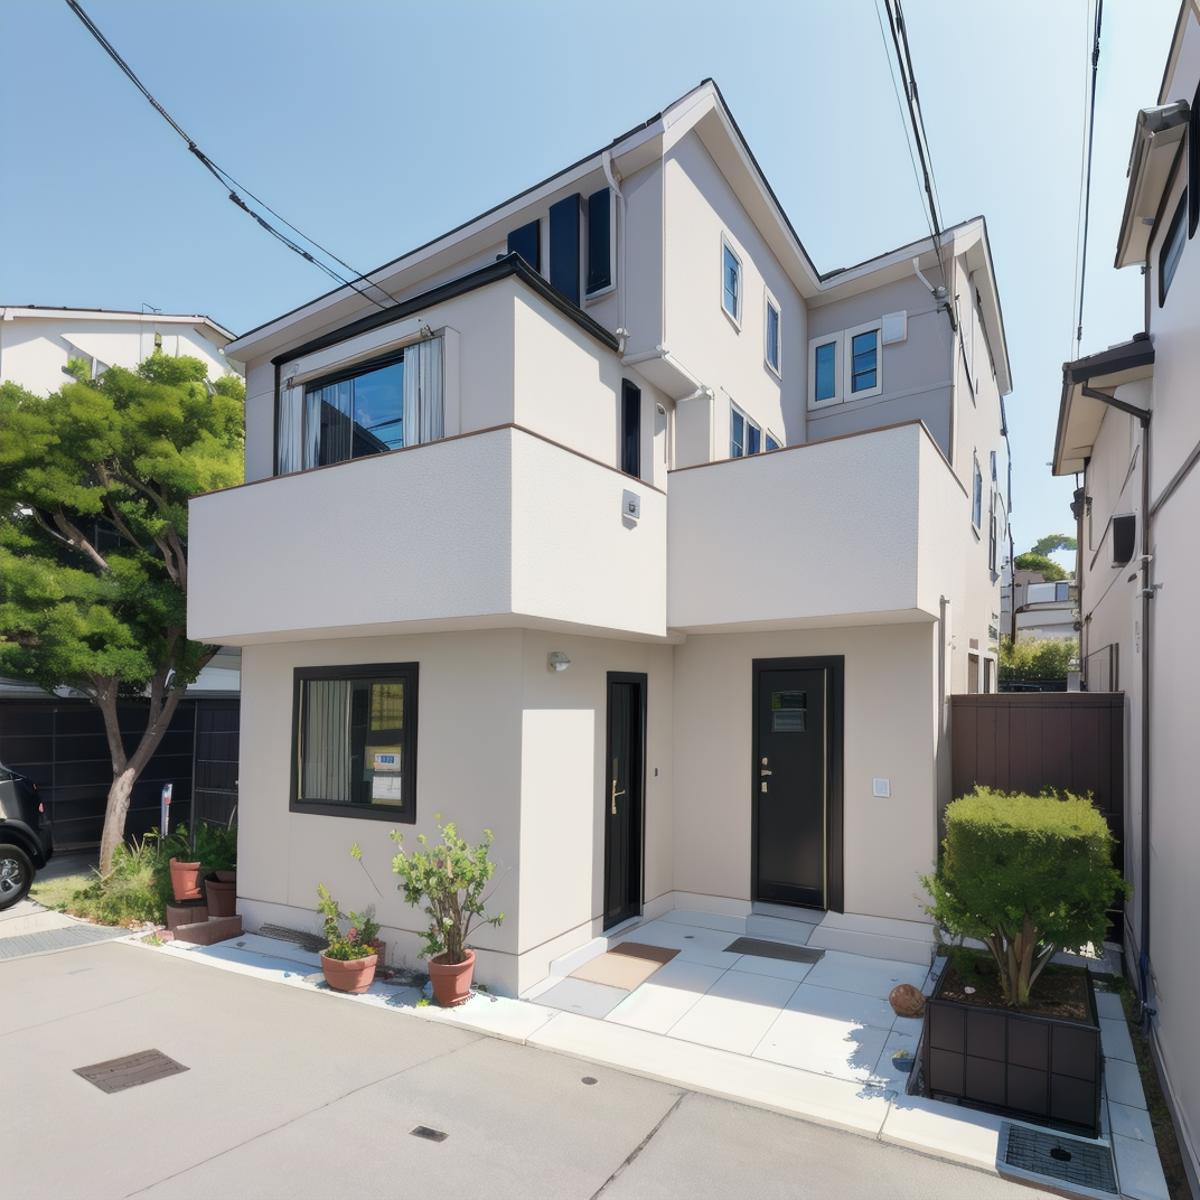 日本の住宅 / Housing in Japan SD15 image by swingwings